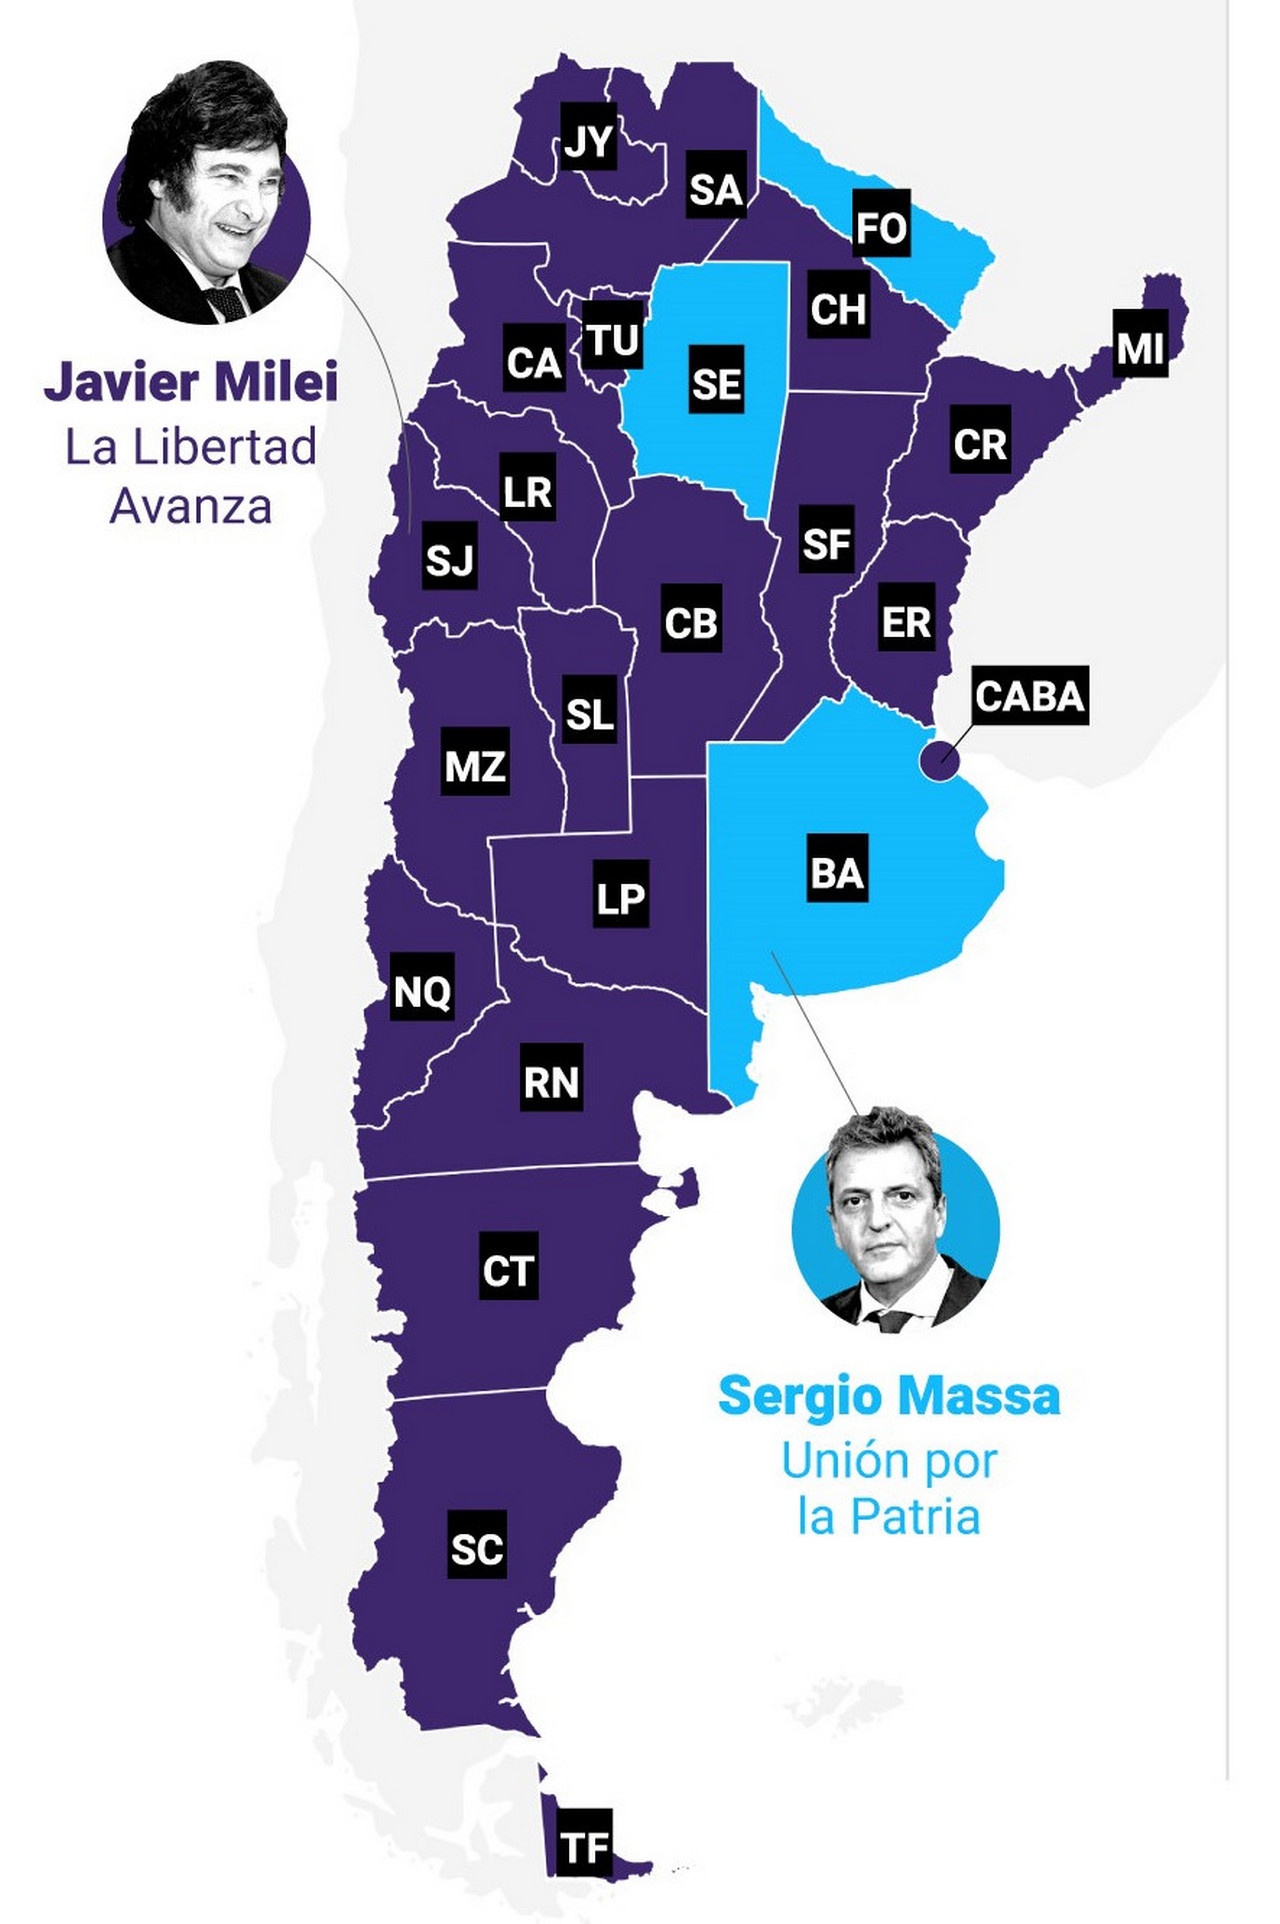 Показатели кандидата, получившего наибольшее количество голосов в каждой провинции во втором туре выборов в Аргентине 2023 года.